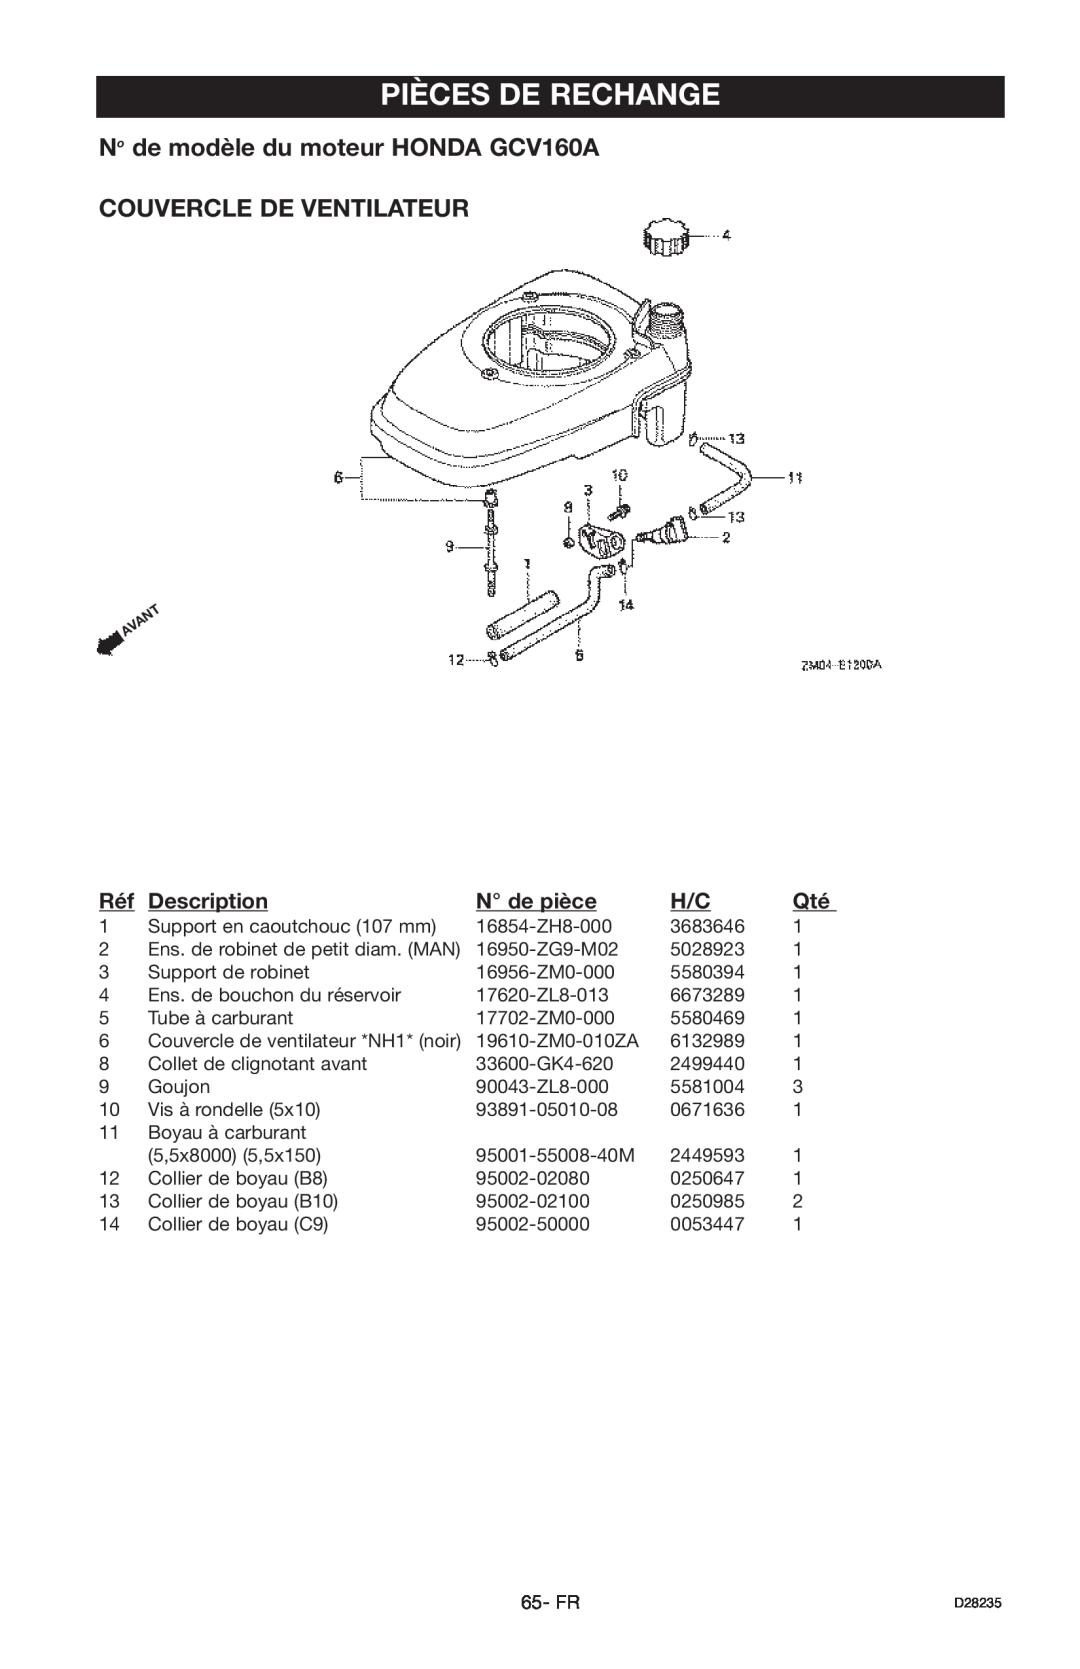 Craftsman 919.672241 Pièces De Rechange, No de modèle du moteur HONDA GCV160A, Couvercle De Ventilateur, Description 